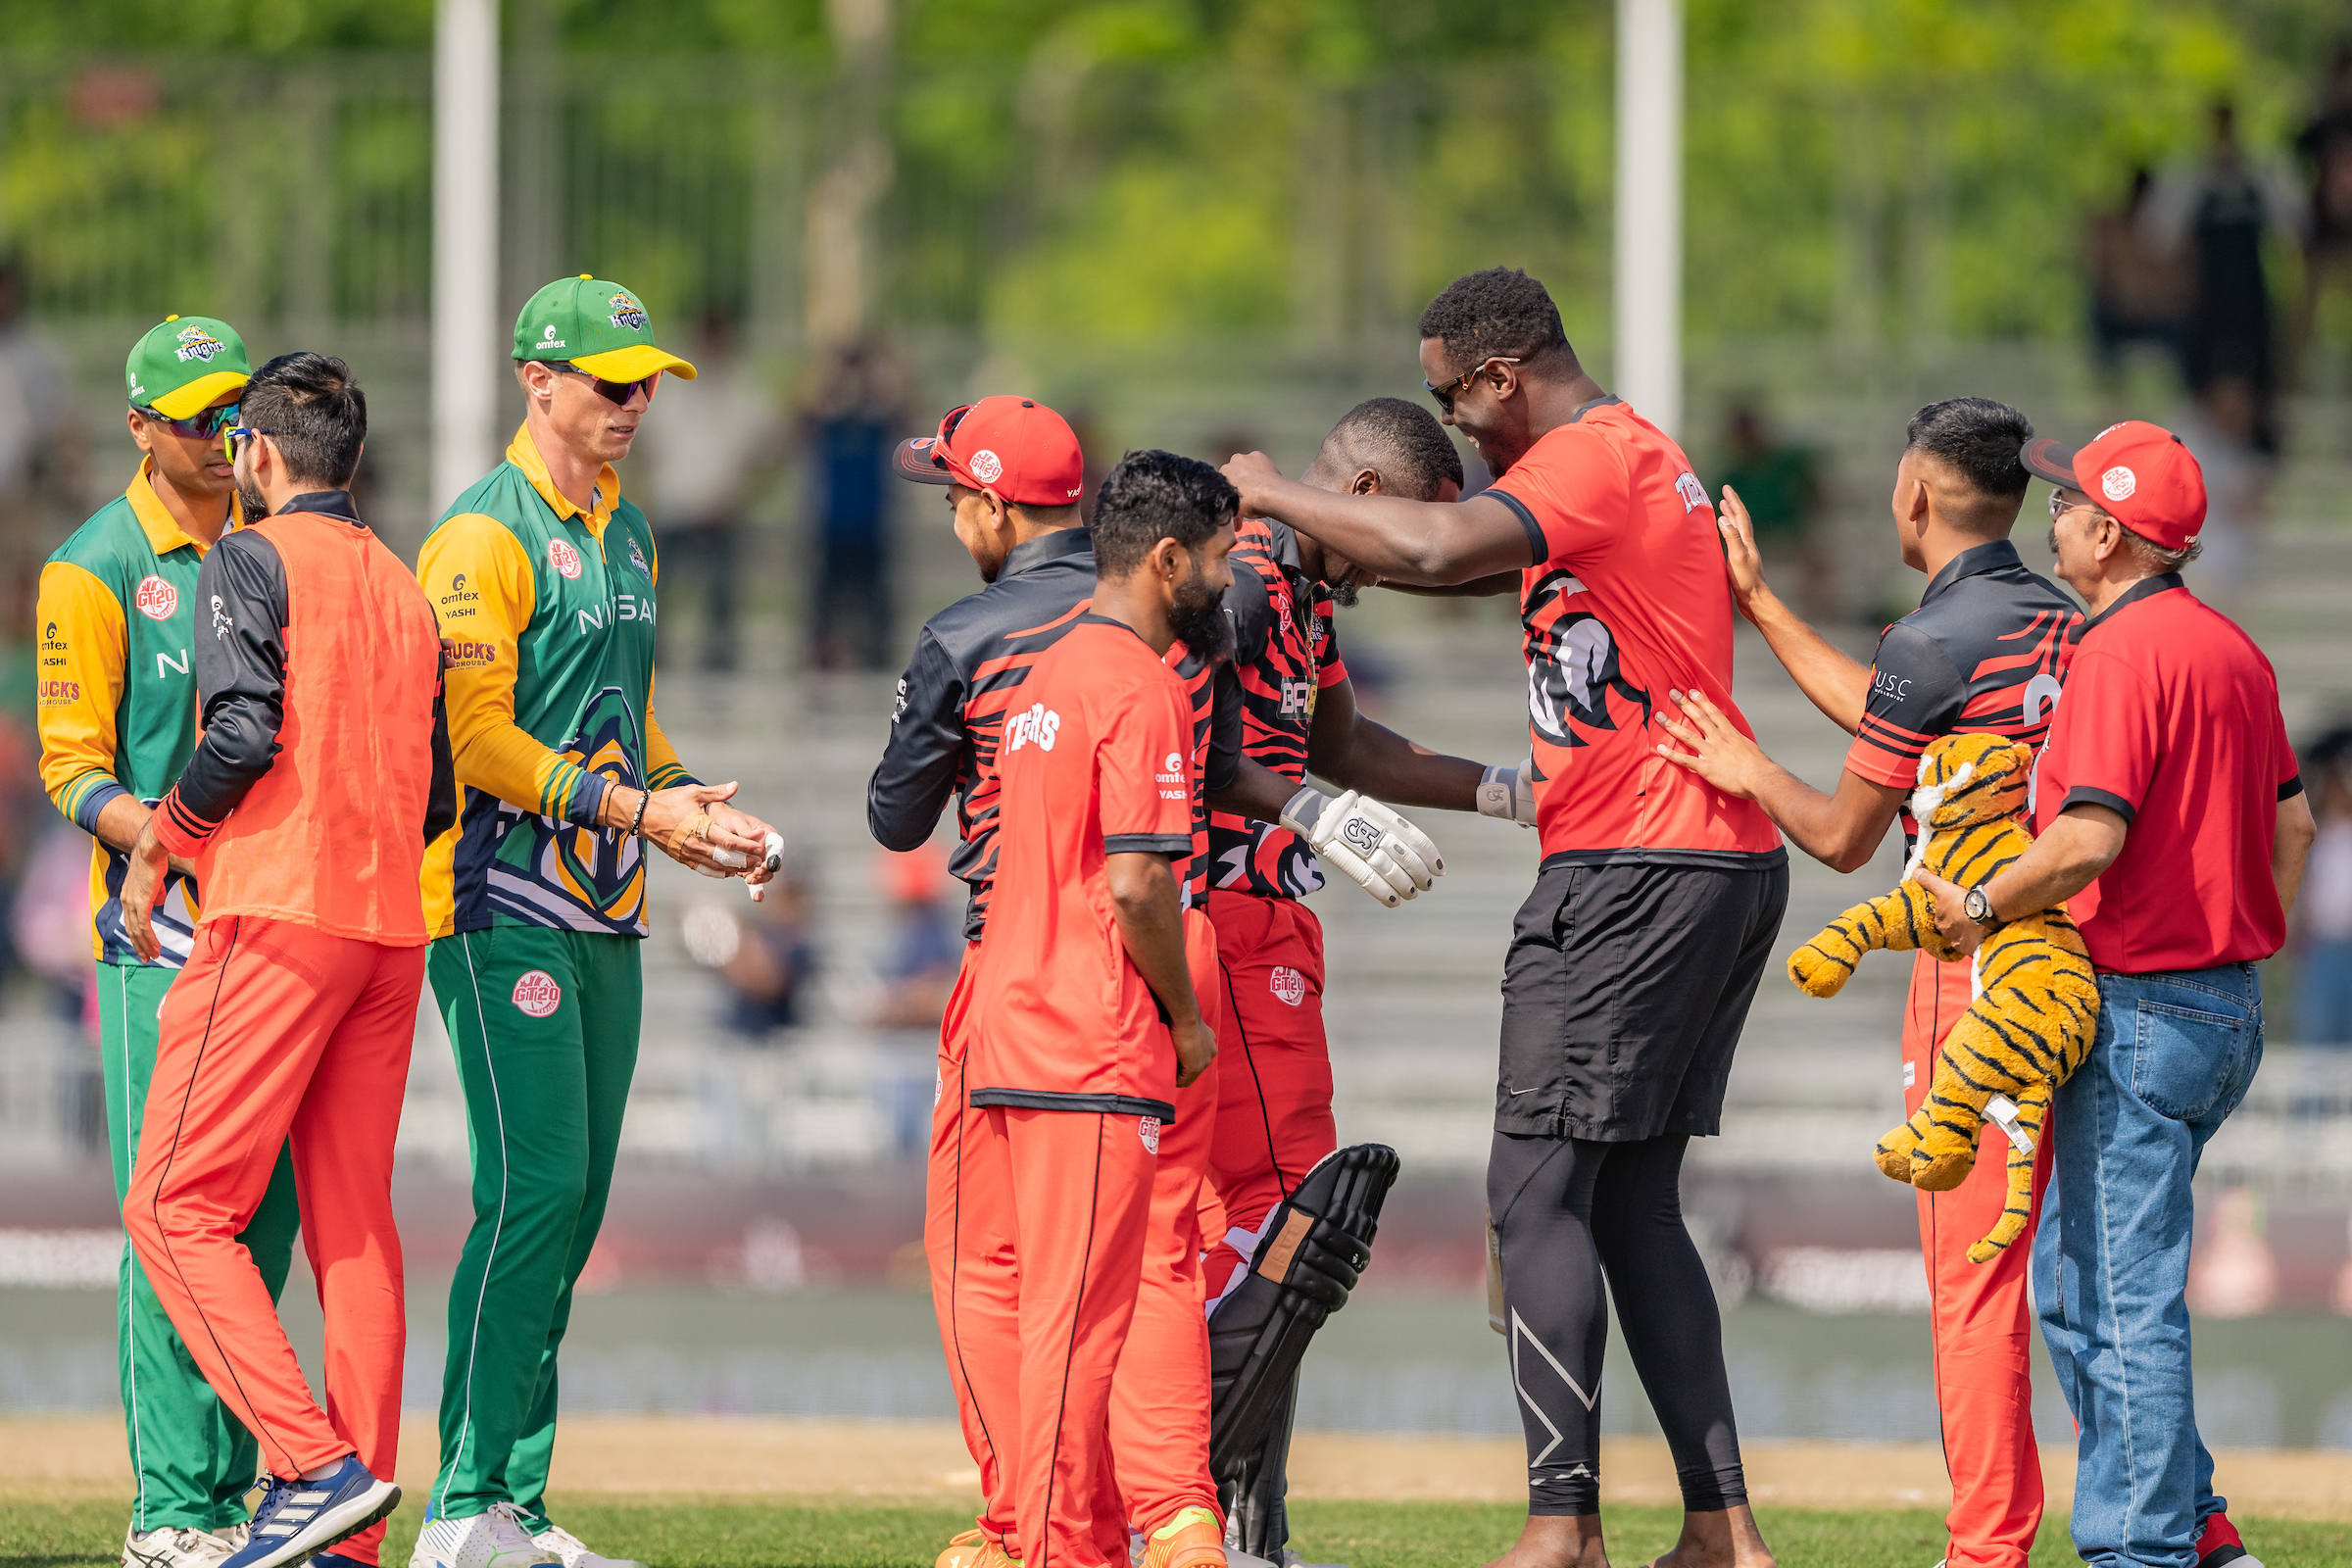 Video: ग्लोबल टी20 लीग में अफरीदी ने 5 विकेट लेकर तोड़ी बल्लेबाजों की कमर, तो टूर्नामेंट की पहली हैट्रिक लेकर बनाया रिकॉर्ड 